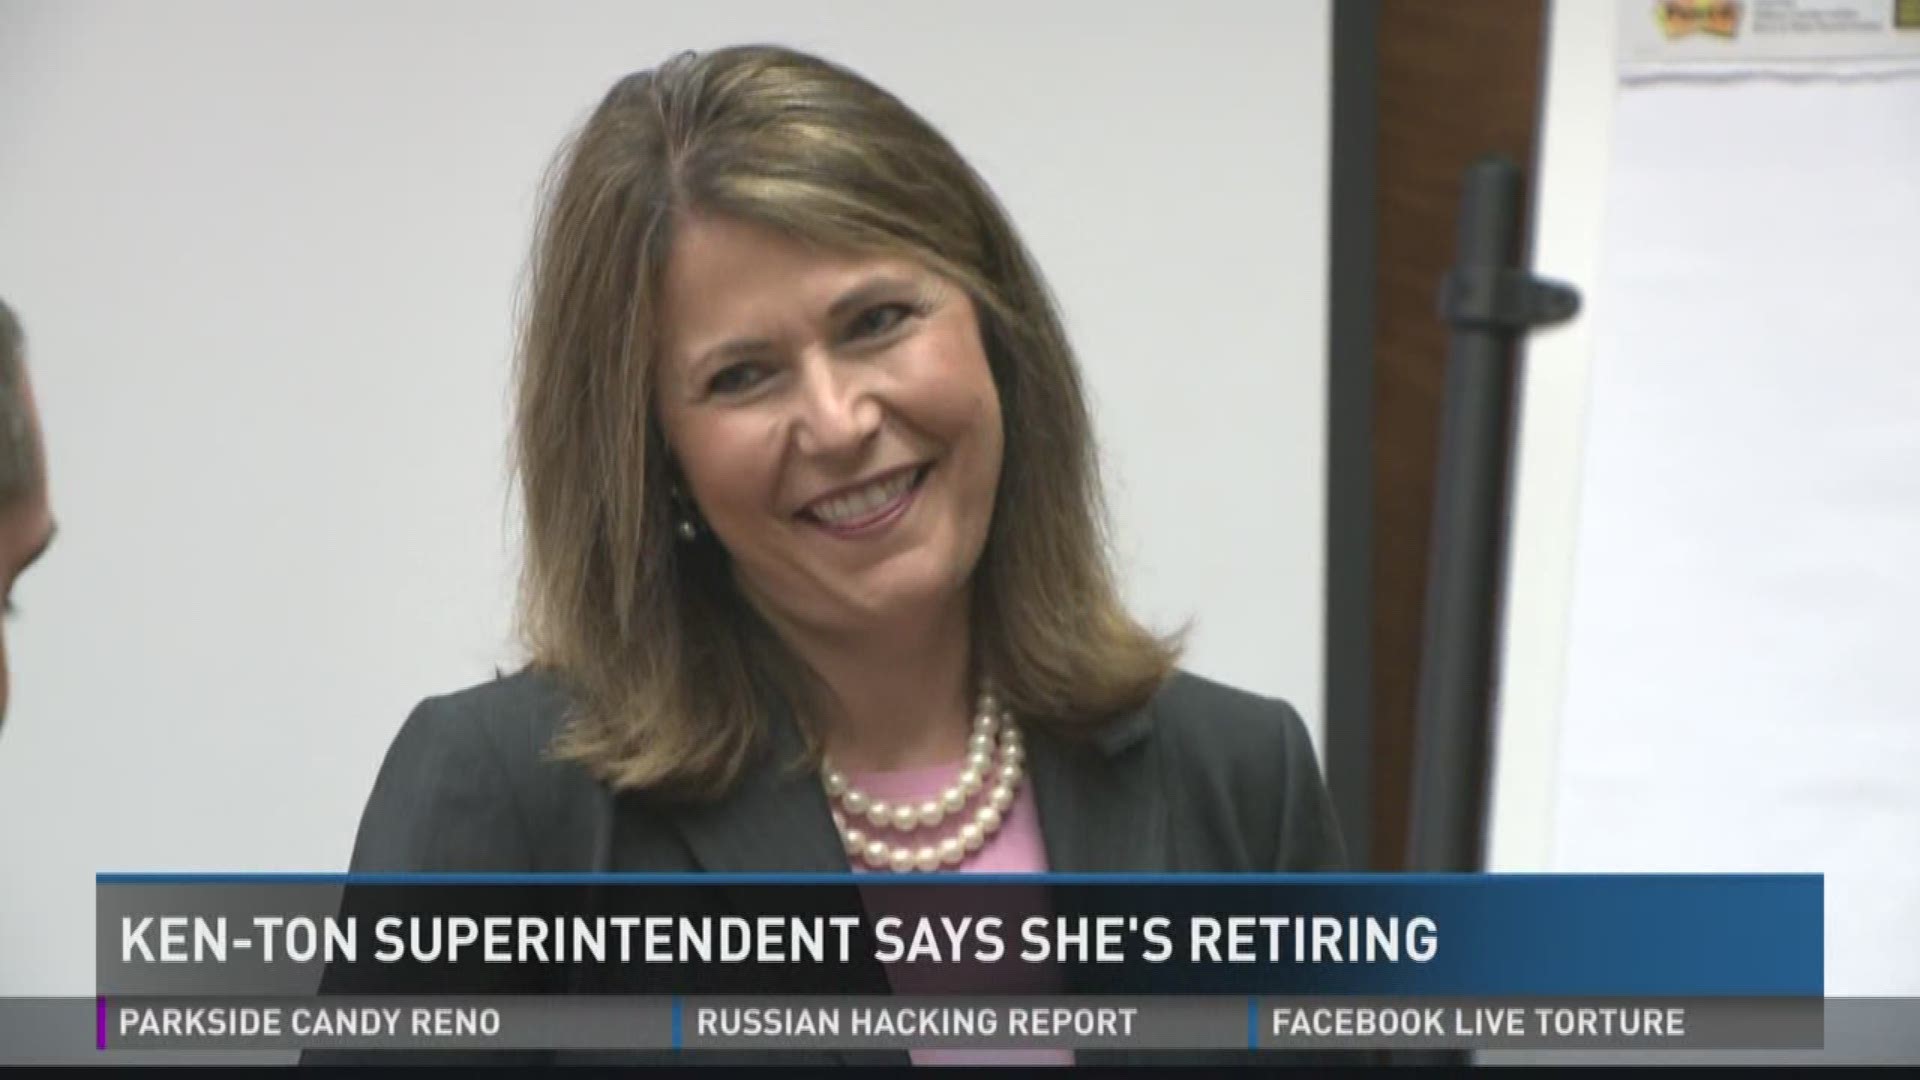 Ken-Ton Superintendent says she's retiring